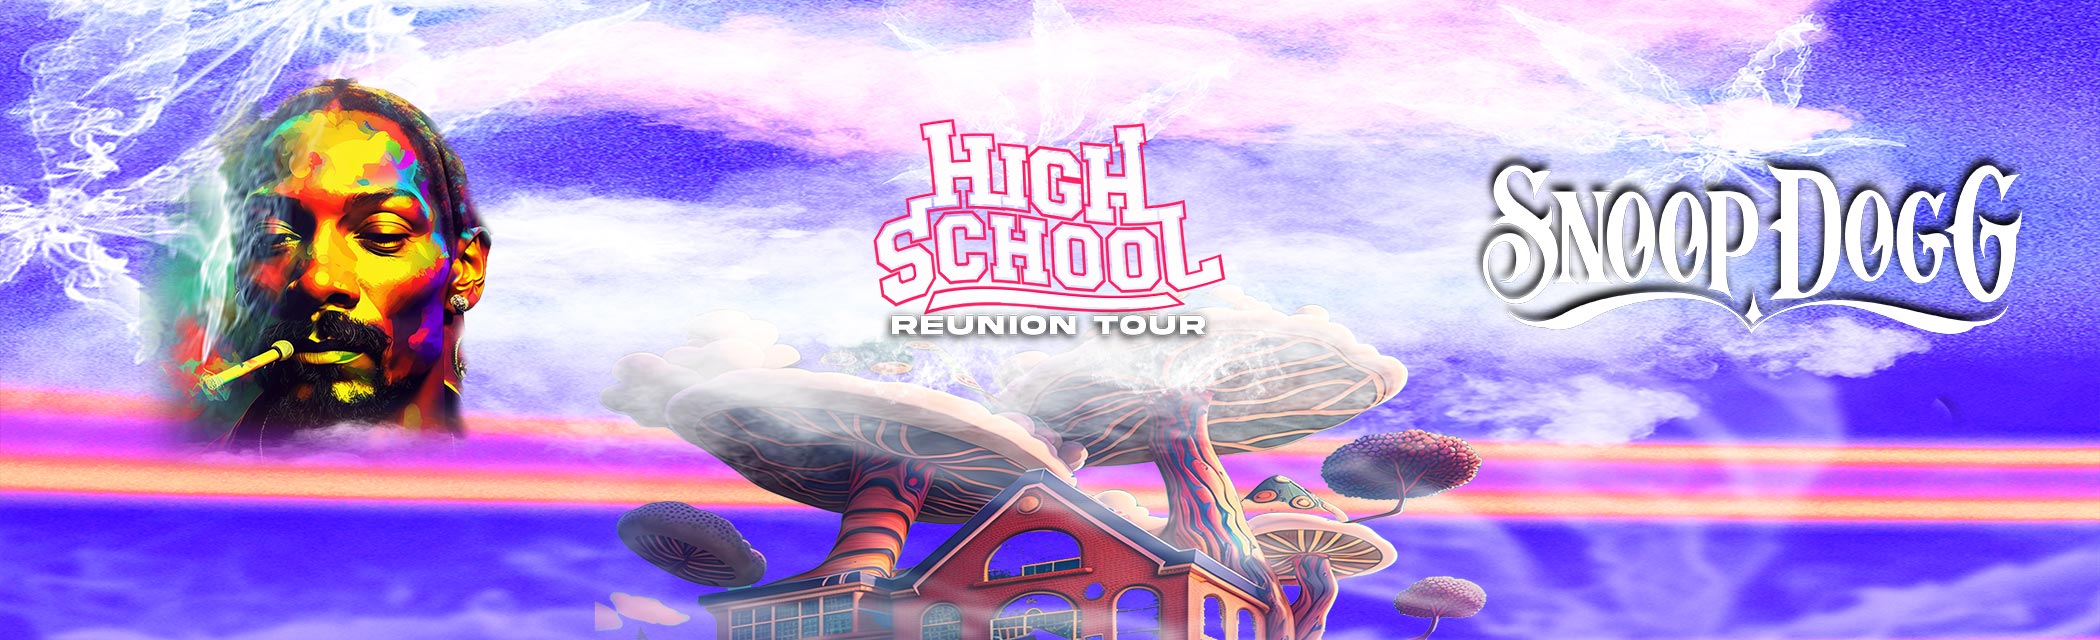 High School Reunion Tour